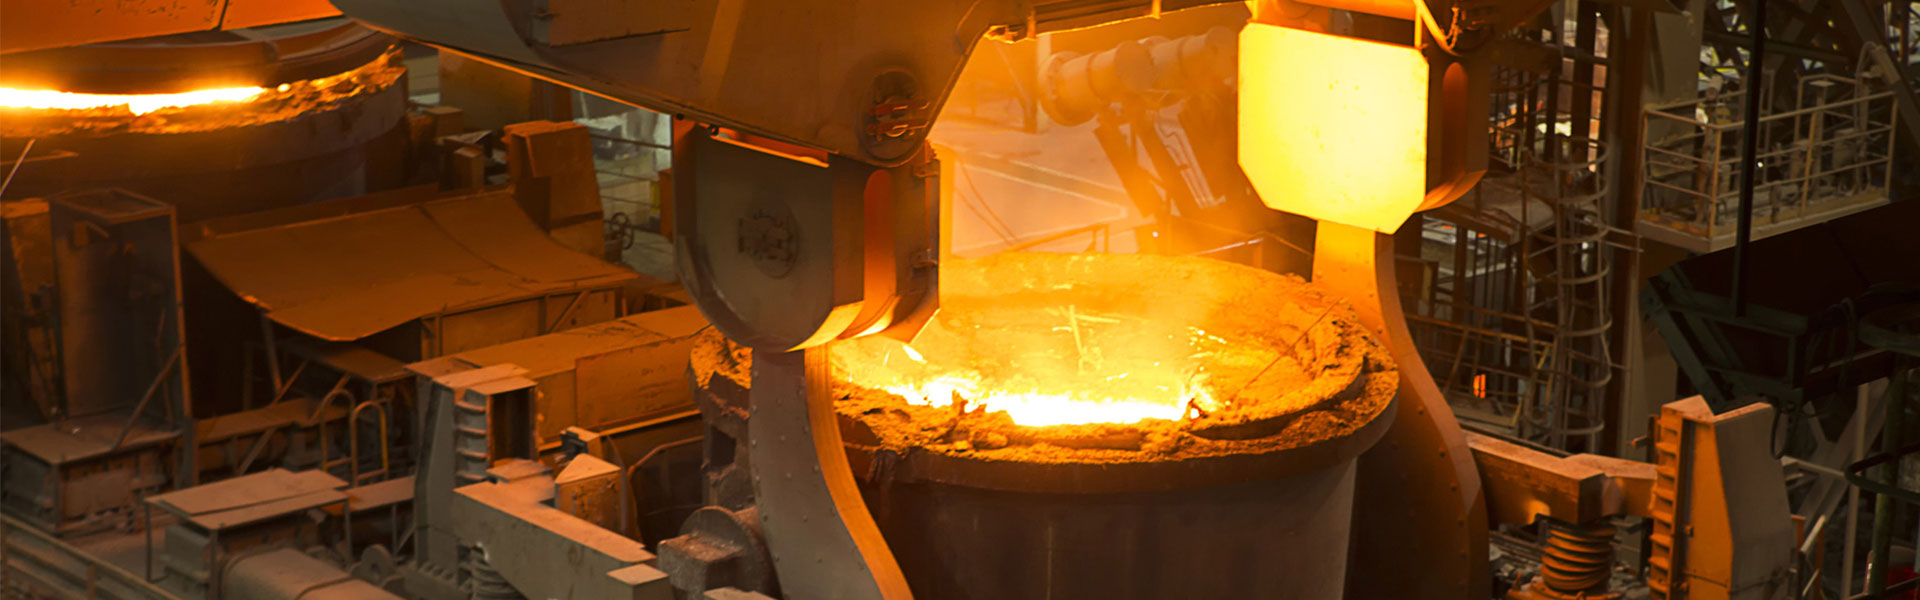 Fabricantes y proveedores de chapa perforada de acero inoxidable - Precio -  Beall Industry Group